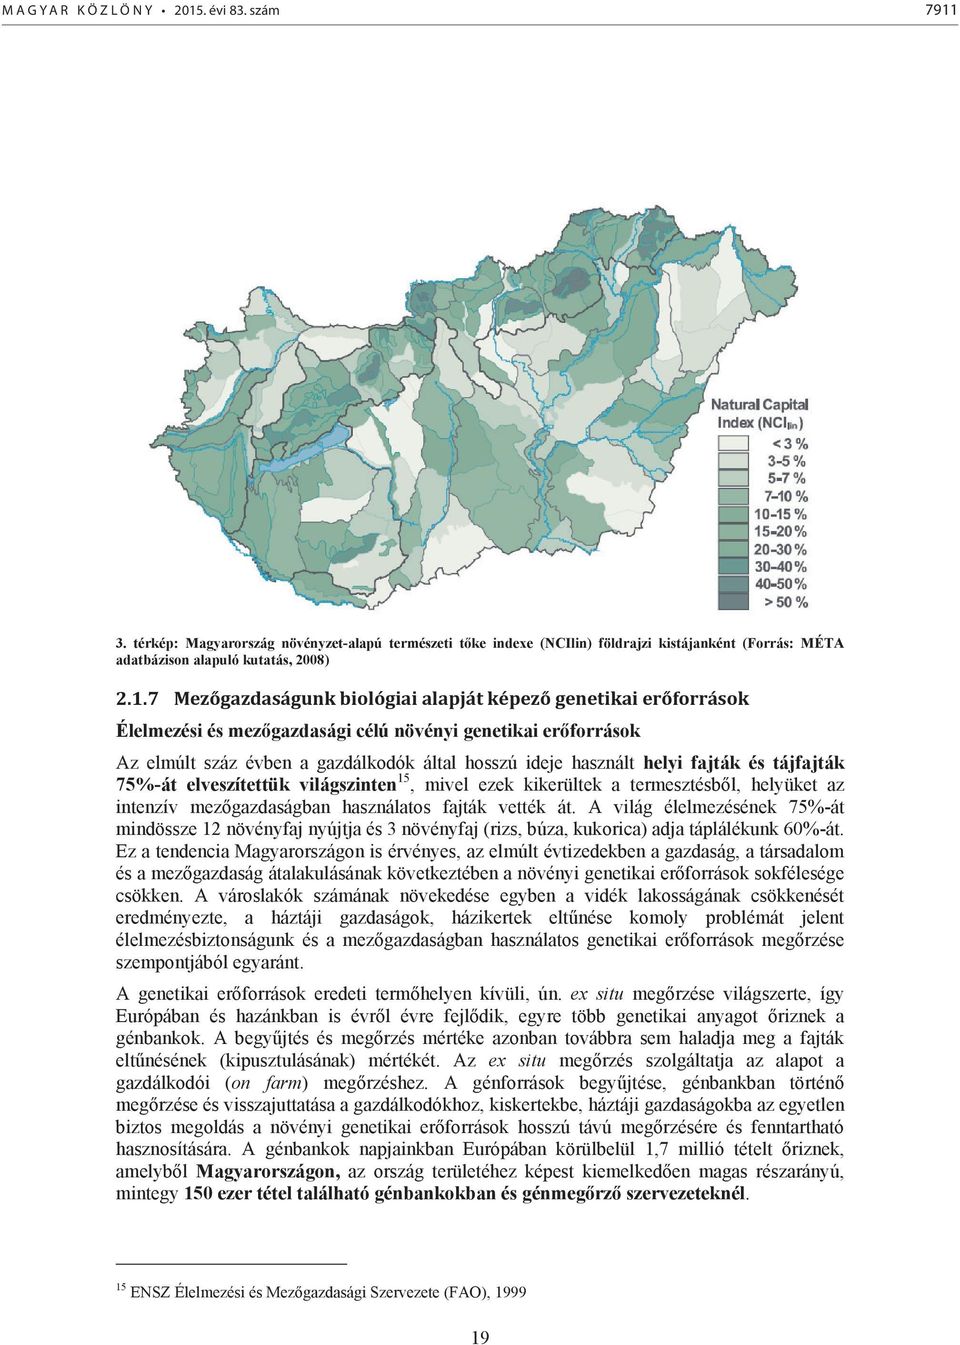 3. térkép: Magyarország növényzet-alapú természeti tőke indexe (NCIlin) földrajzi kistájanként (Forrás: MÉTA adatbázison alapuló kutatás, 2008) 2.1.